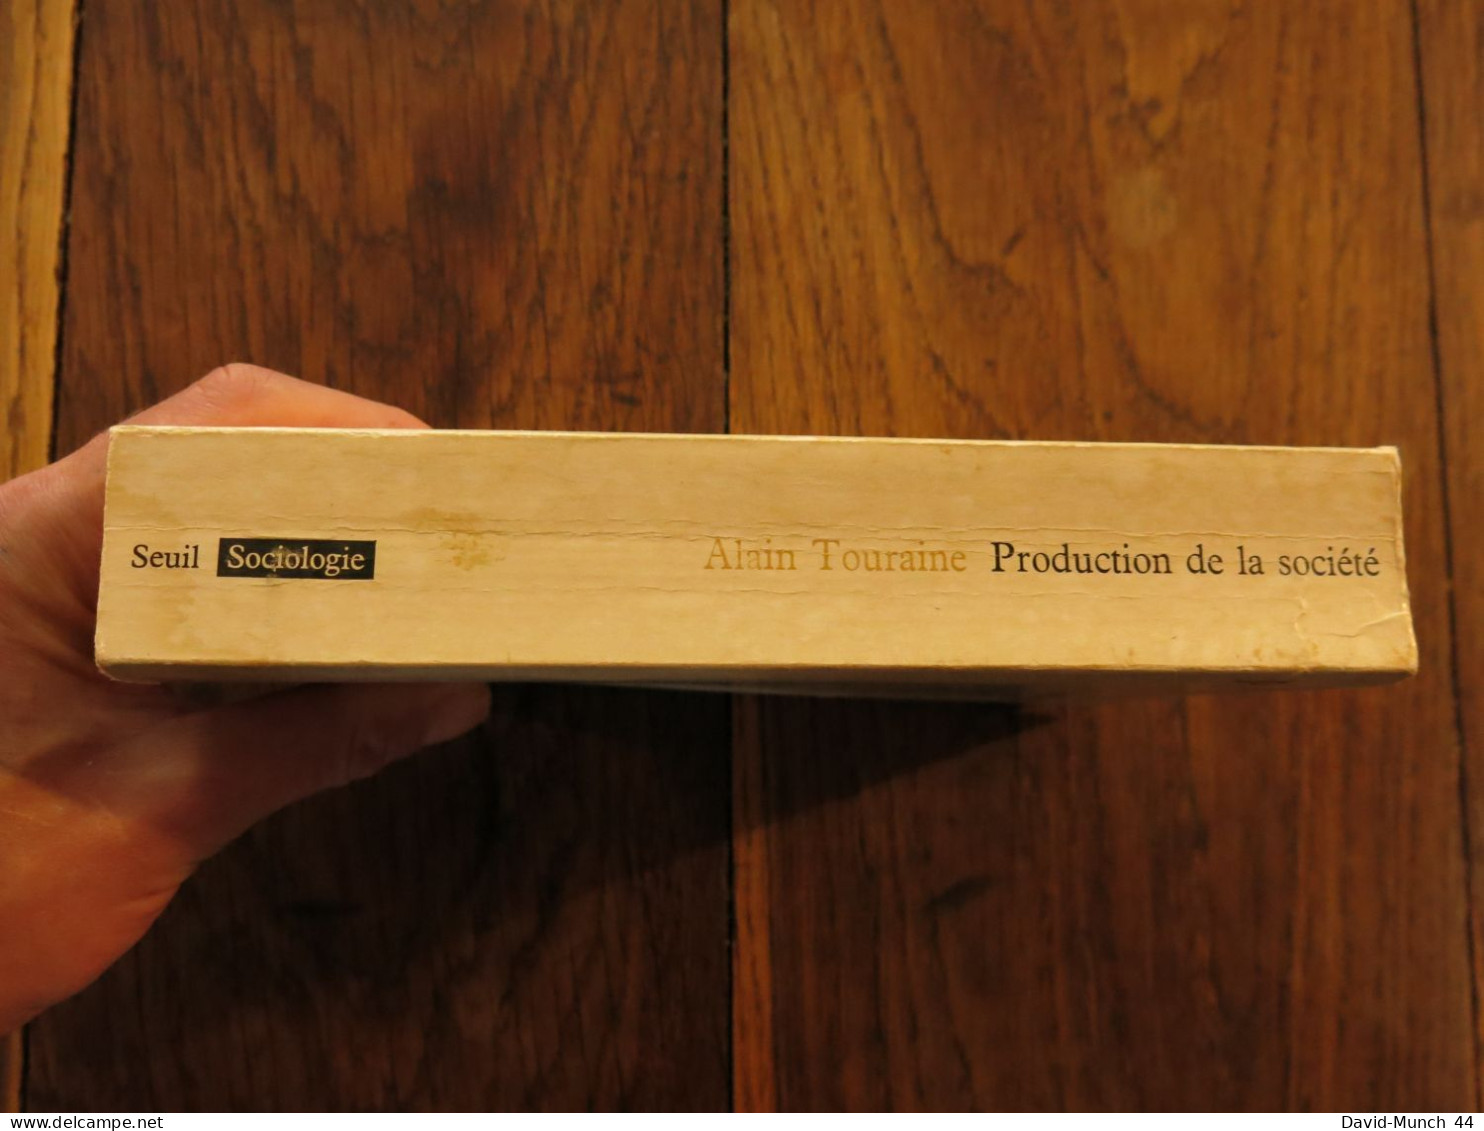 Production De La Société De Alain Touraine. Editions Du Seuil, Collection Sociologie, Paris. 1973 - Soziologie